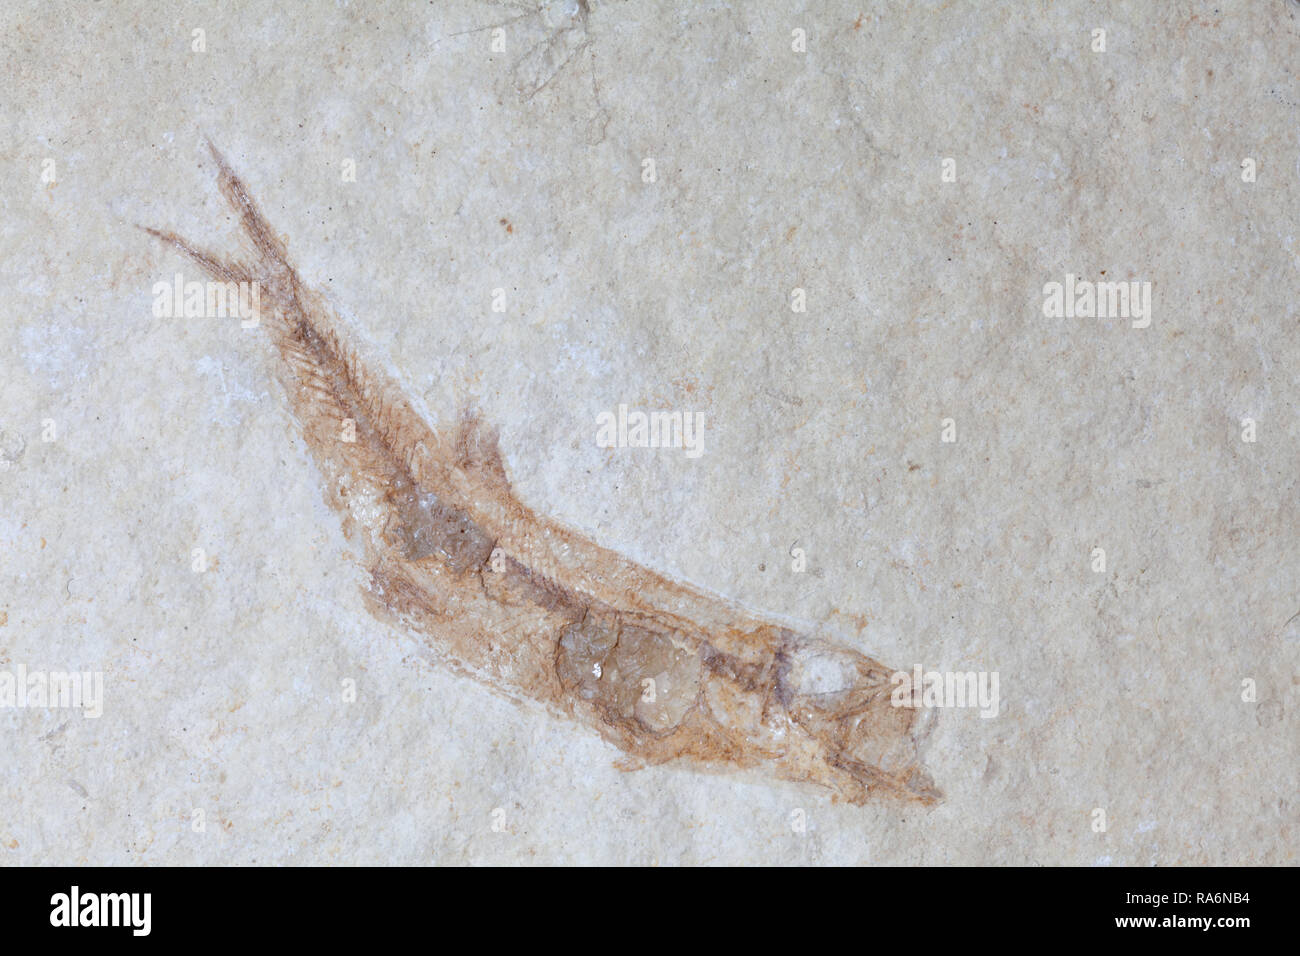 Pesci fossili petrification, Solnhofen, Germania. Leptolepis sprattifornis Malm.Ca. 140 Mill. Anni di età. Foto Stock